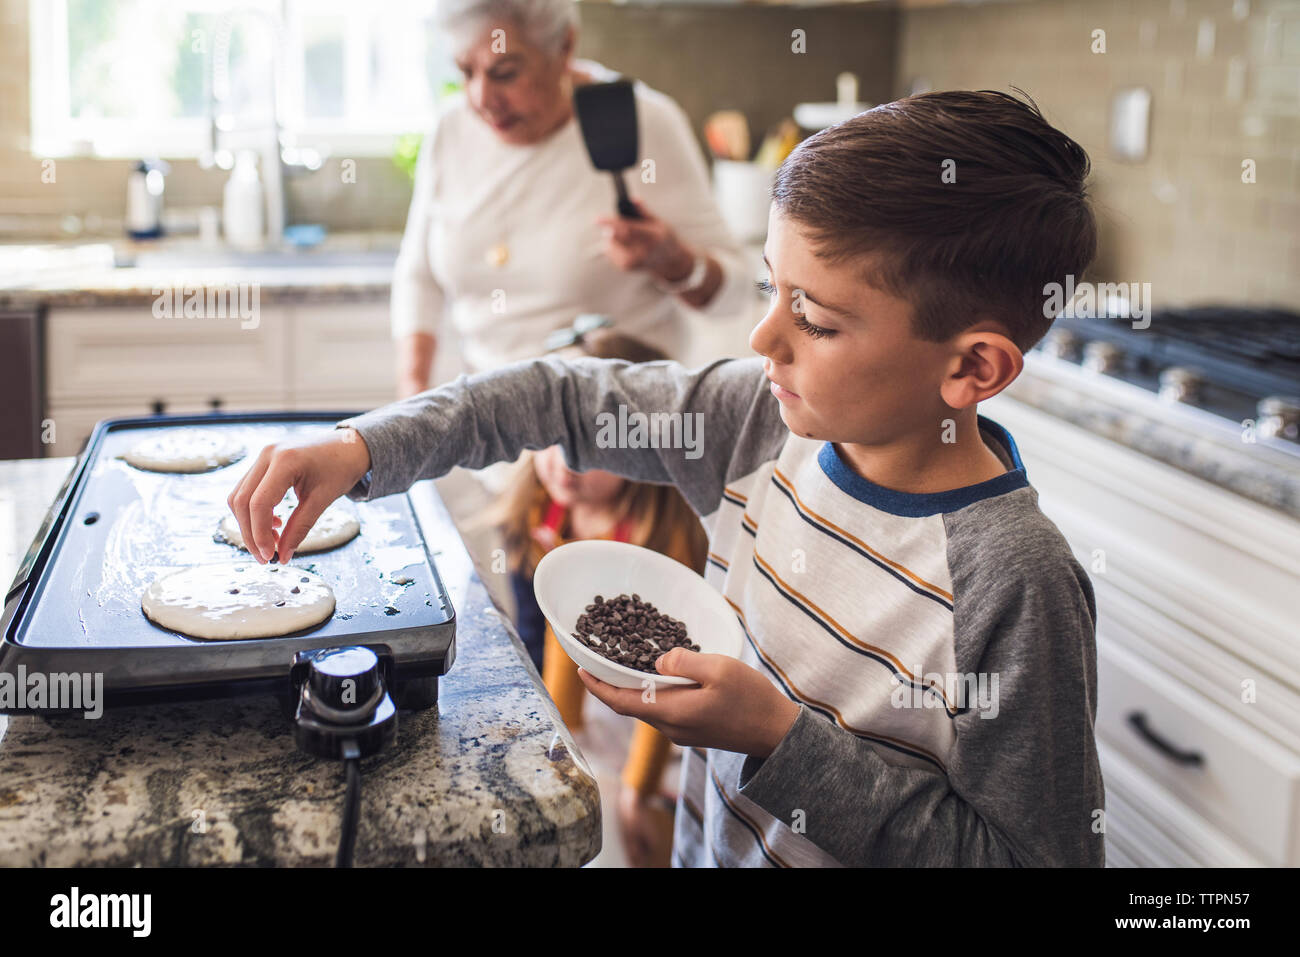 Jeune garçon la cuisson des crêpes avec famille de plusieurs générations Banque D'Images